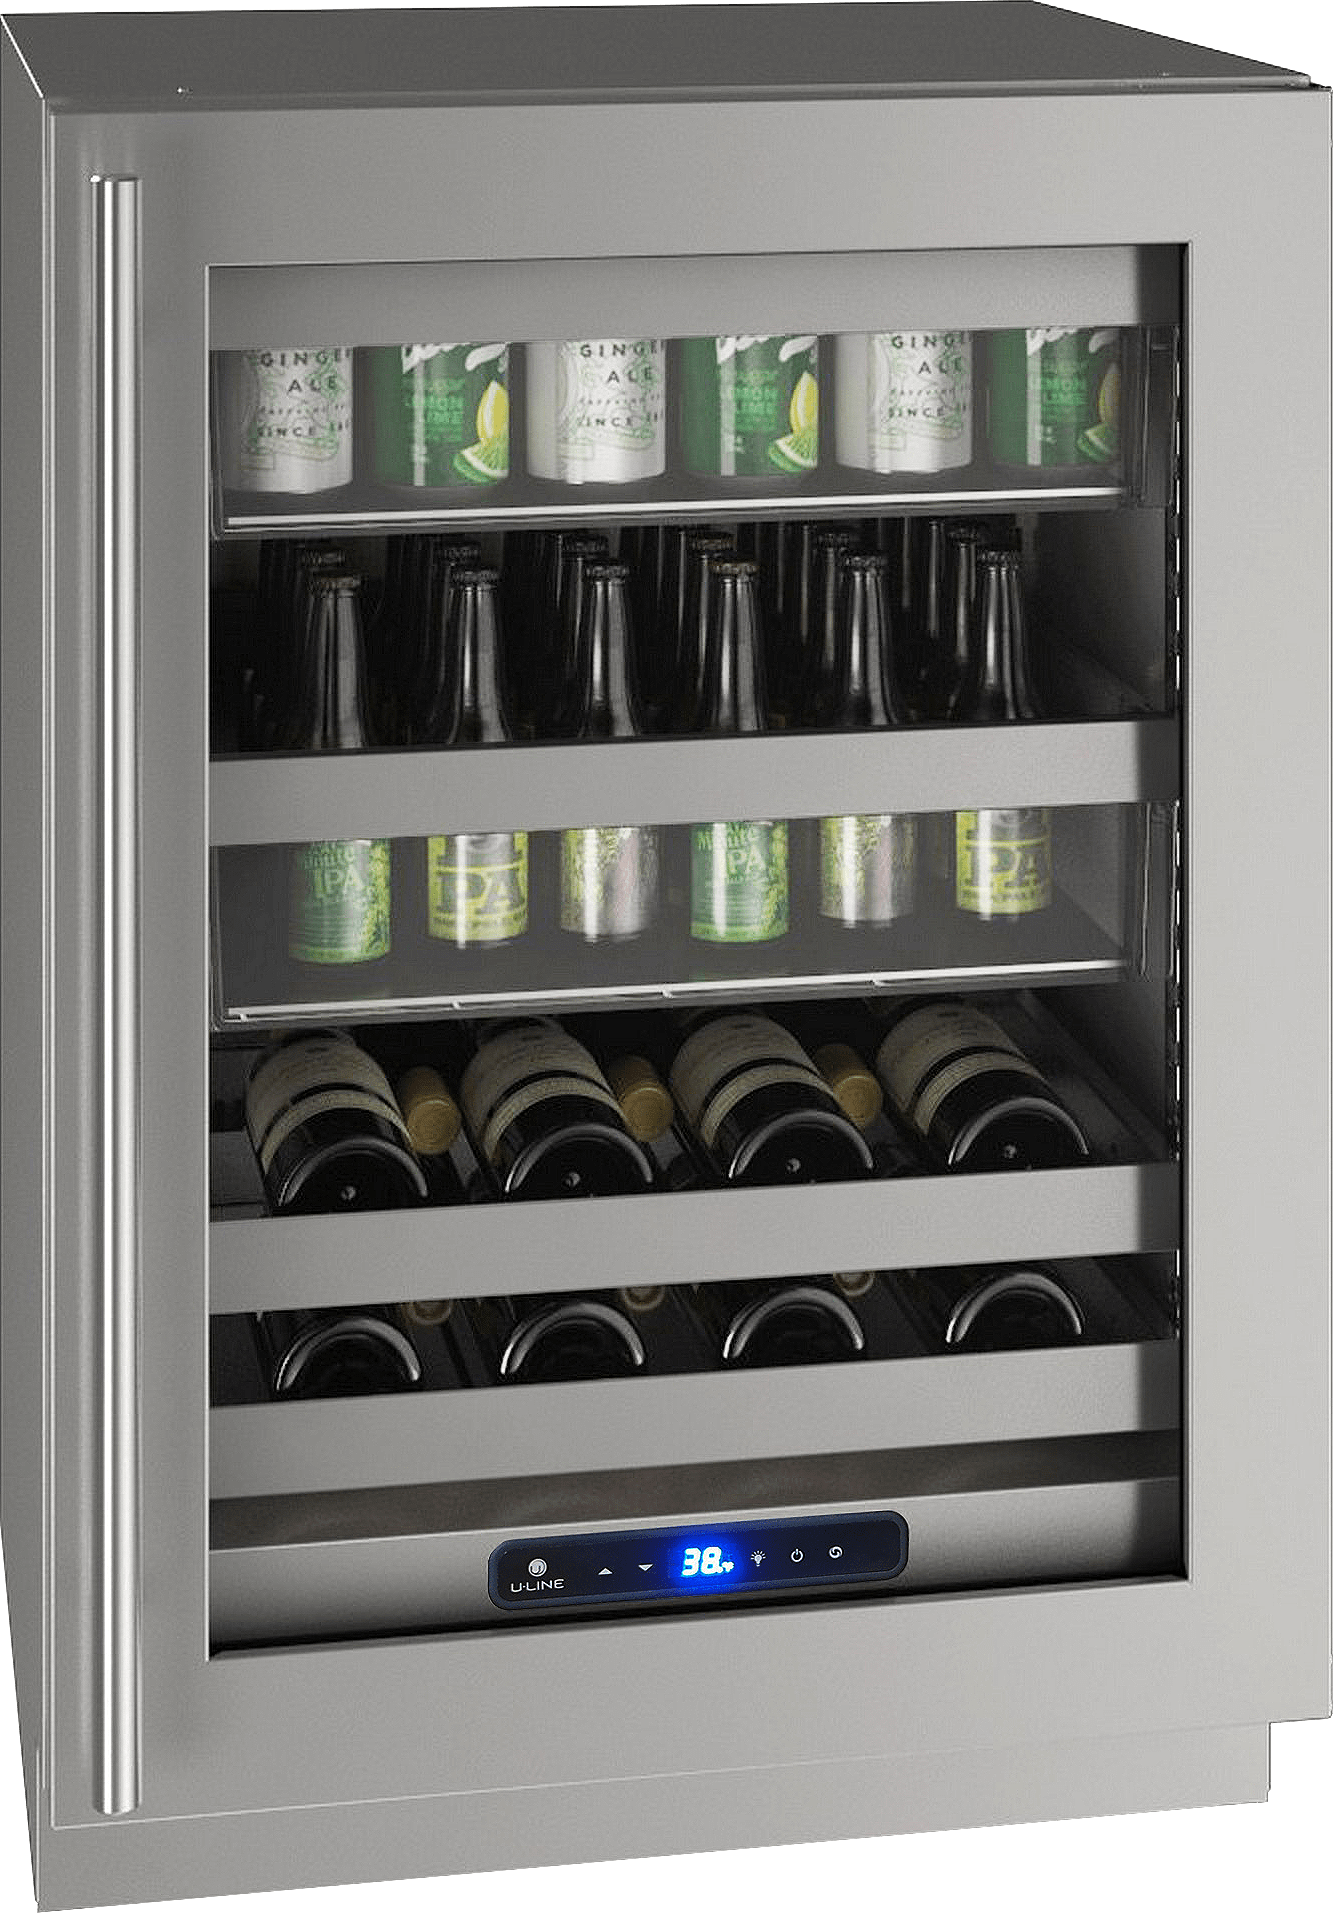 U-Line HBV524 24" Beverage Center Reversible Hinge Integrated Frame Wine Coolers Empire